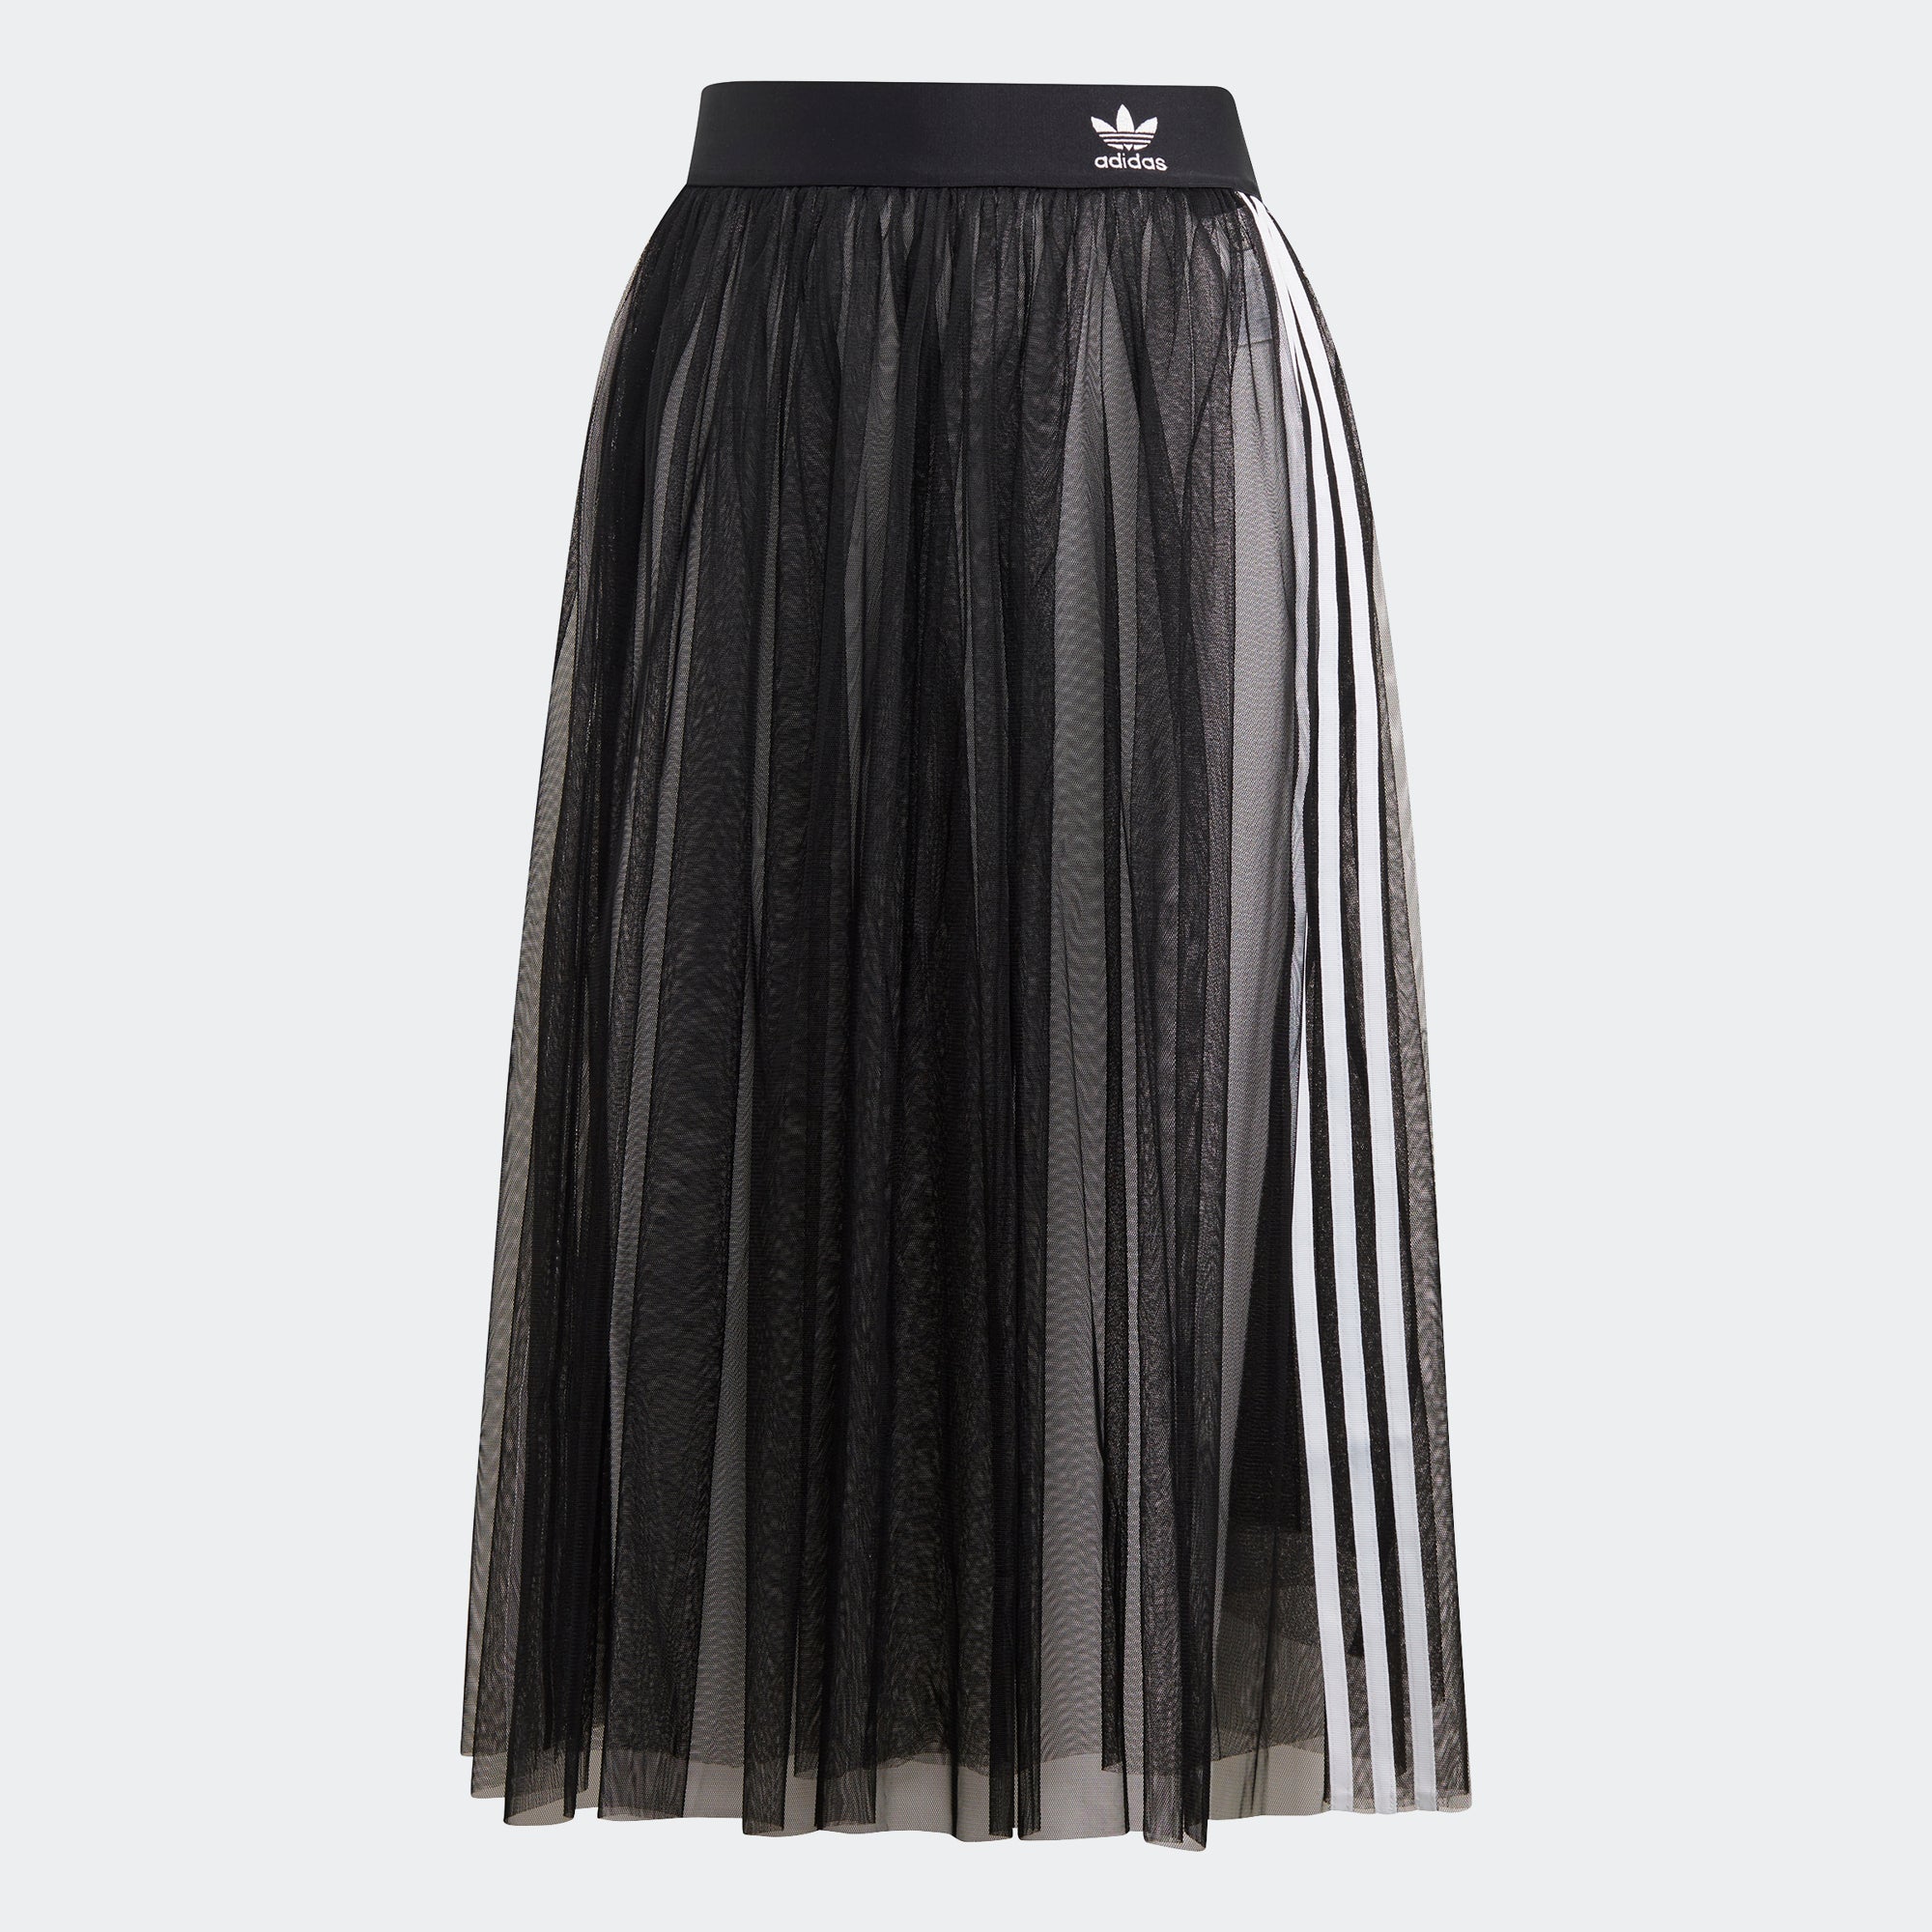 adidas black tulle skirt